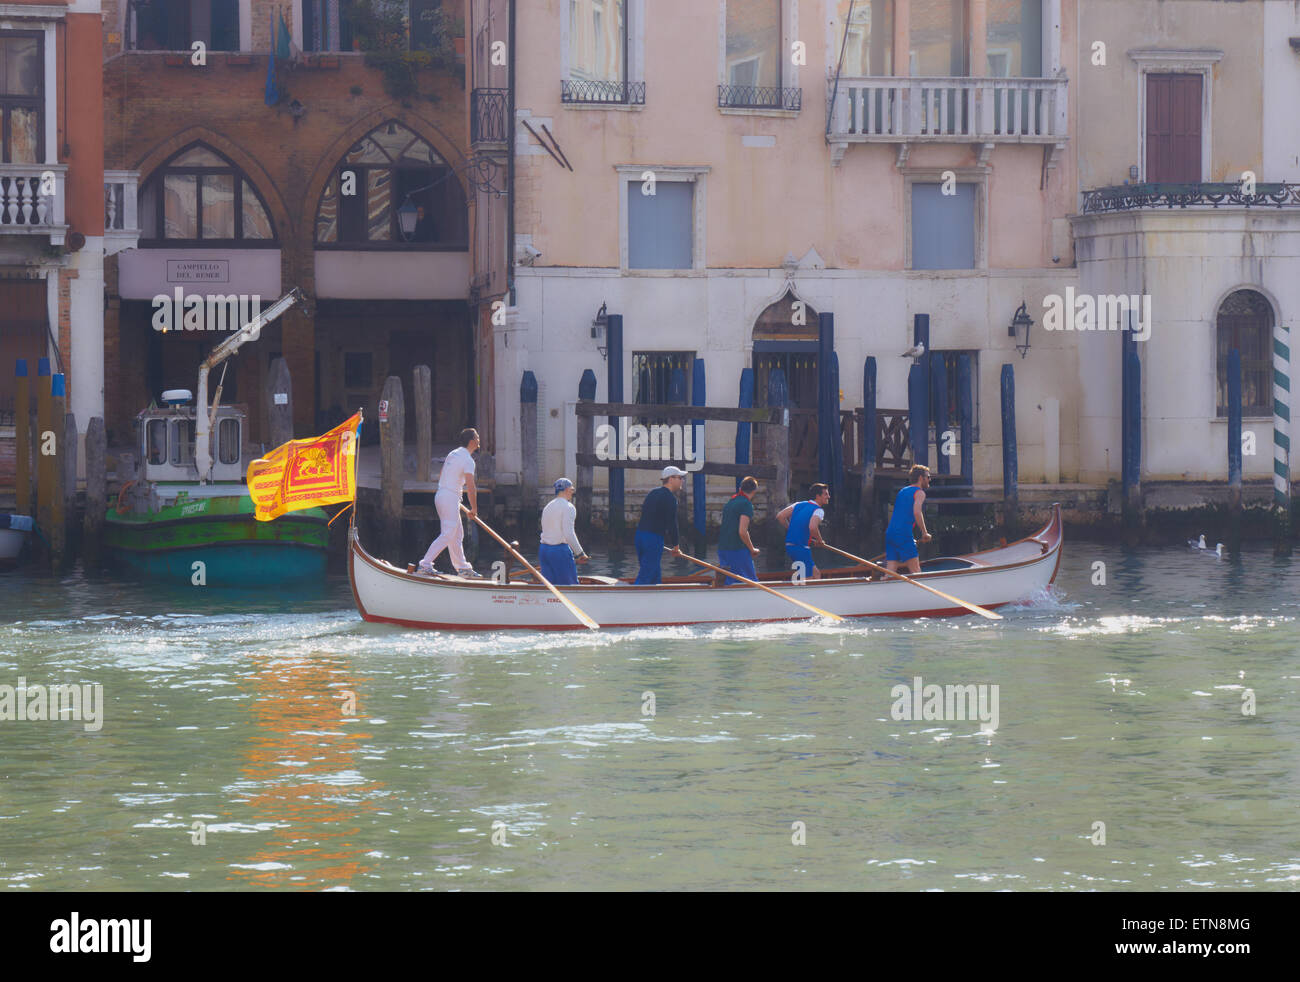 Trübe Sonnenlicht auf einem Boot ruderte von sechs Männern und die venezianischen Flagge eines geflügelten Löwen Reisen entlang des Canal Grande Venedig Stockfoto